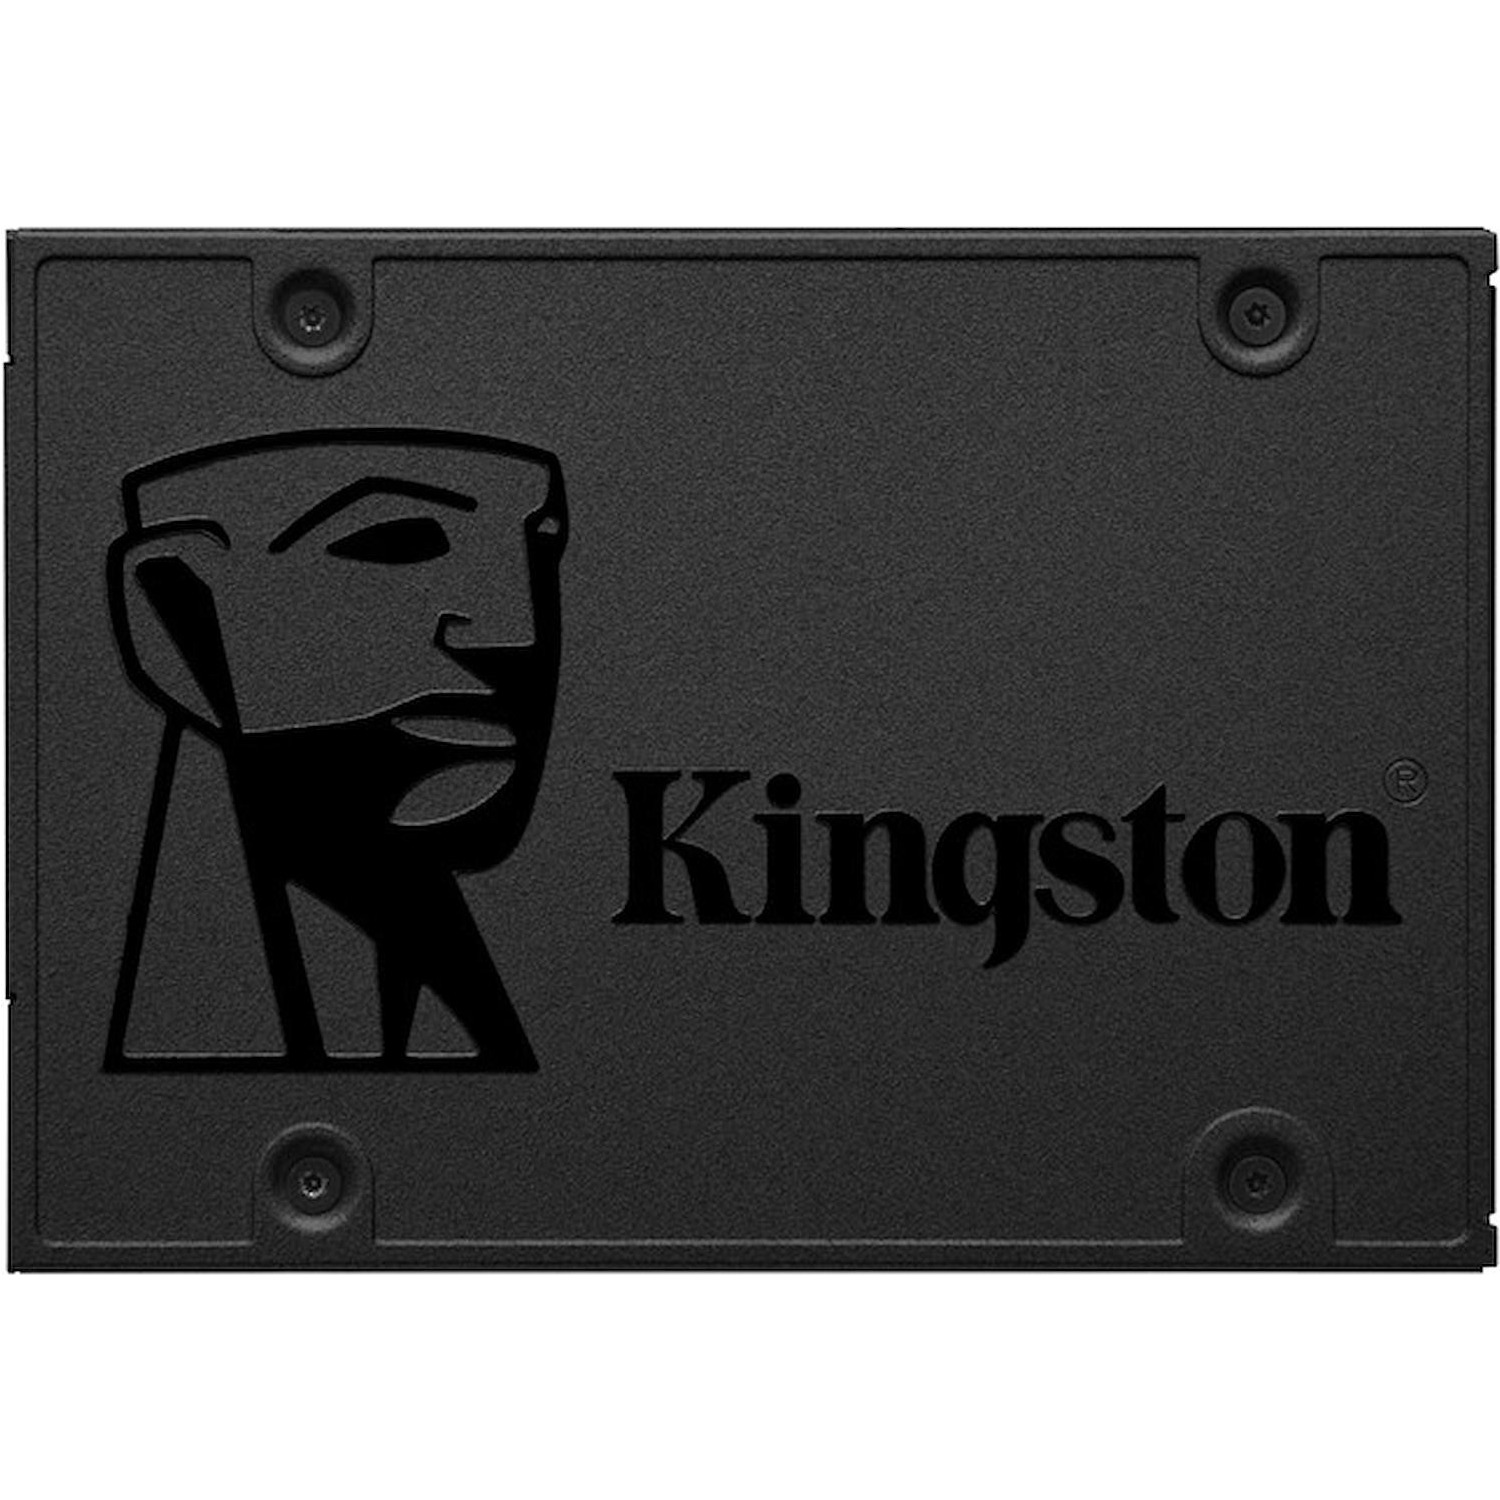 Immagine per HD SSD Kingston 960GB Sata 3 2,5" da DIMOStore